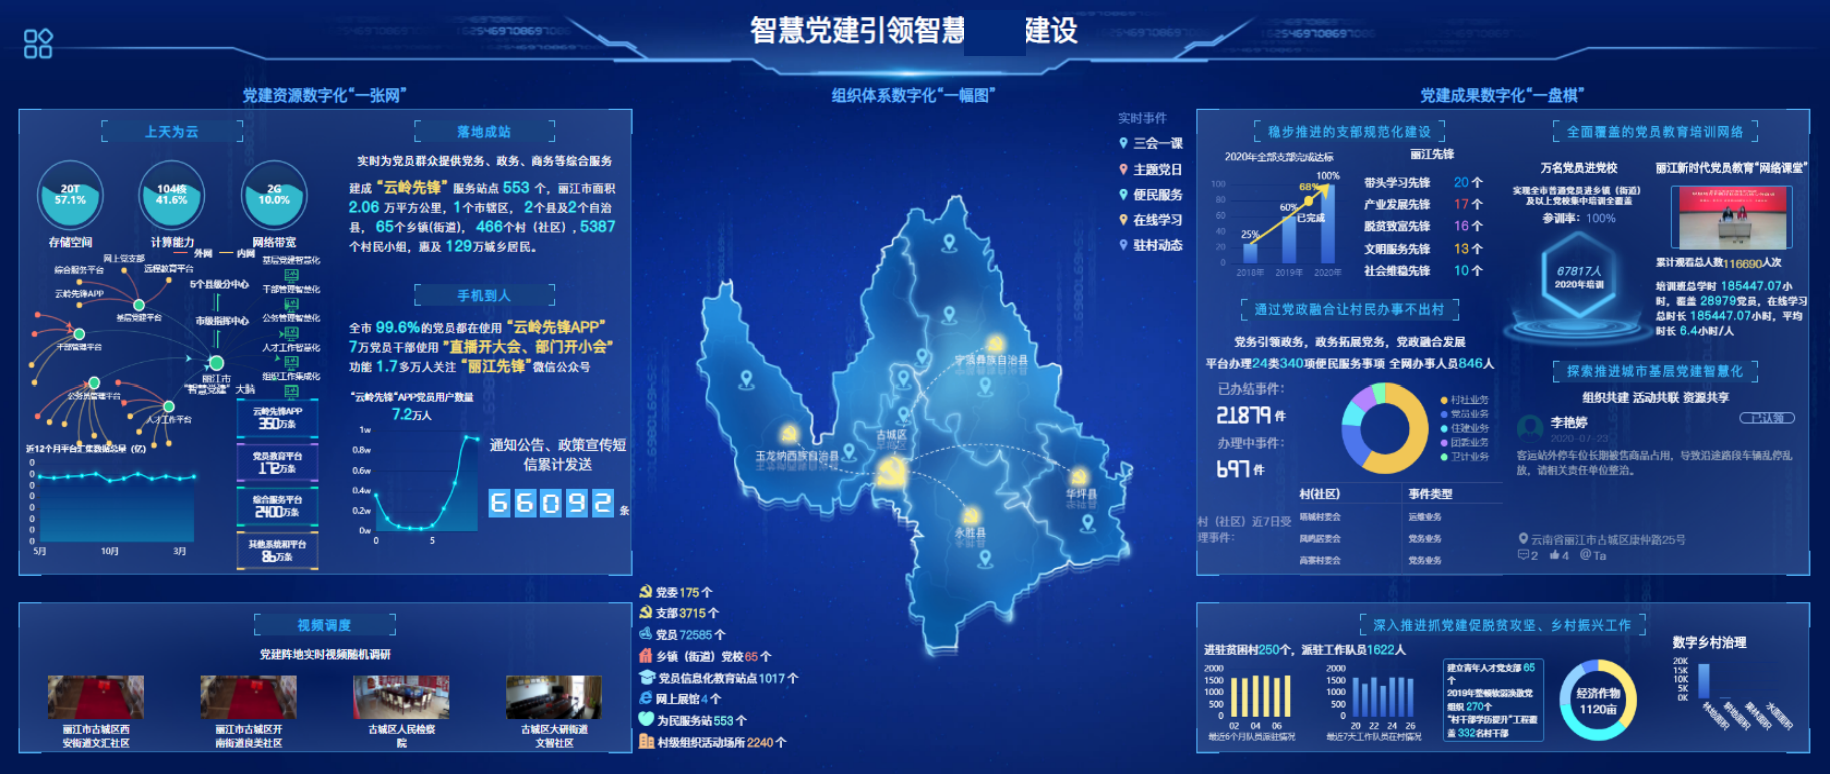 云南省某区域中心城市智慧党建项目